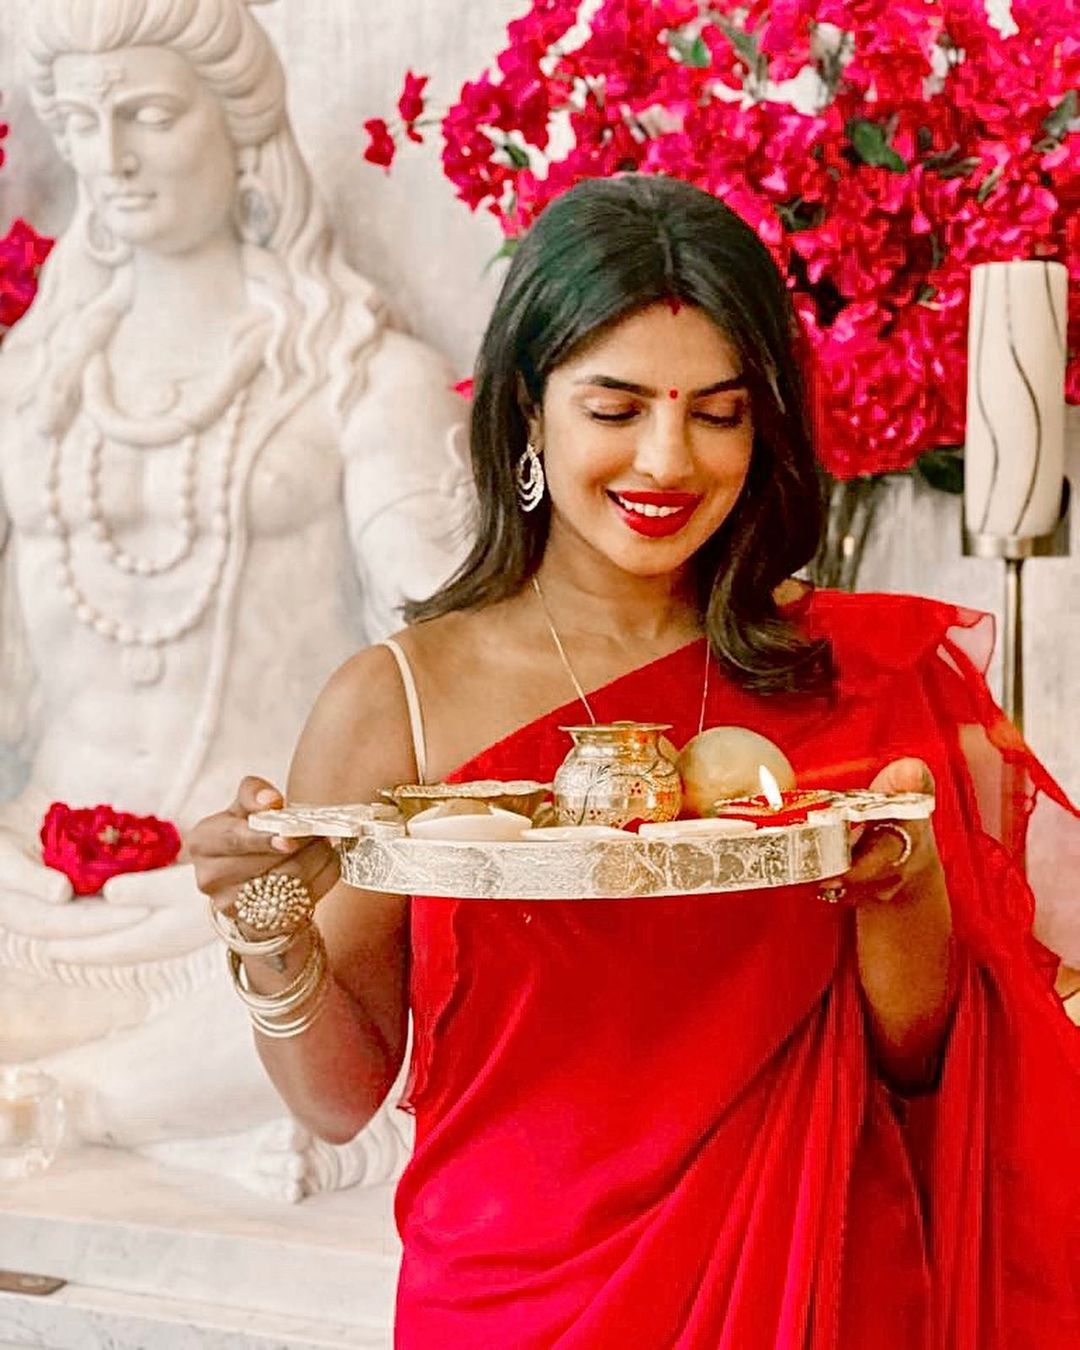 Priyanka Chopra ने सात समंदर पार मनाया करवा चौथ, लाल साड़ी और हाथों में पूजा की थाली लिए आईं नजर, Priyanka Chopra celebrates karwa chauth with nick jonas fans will love her